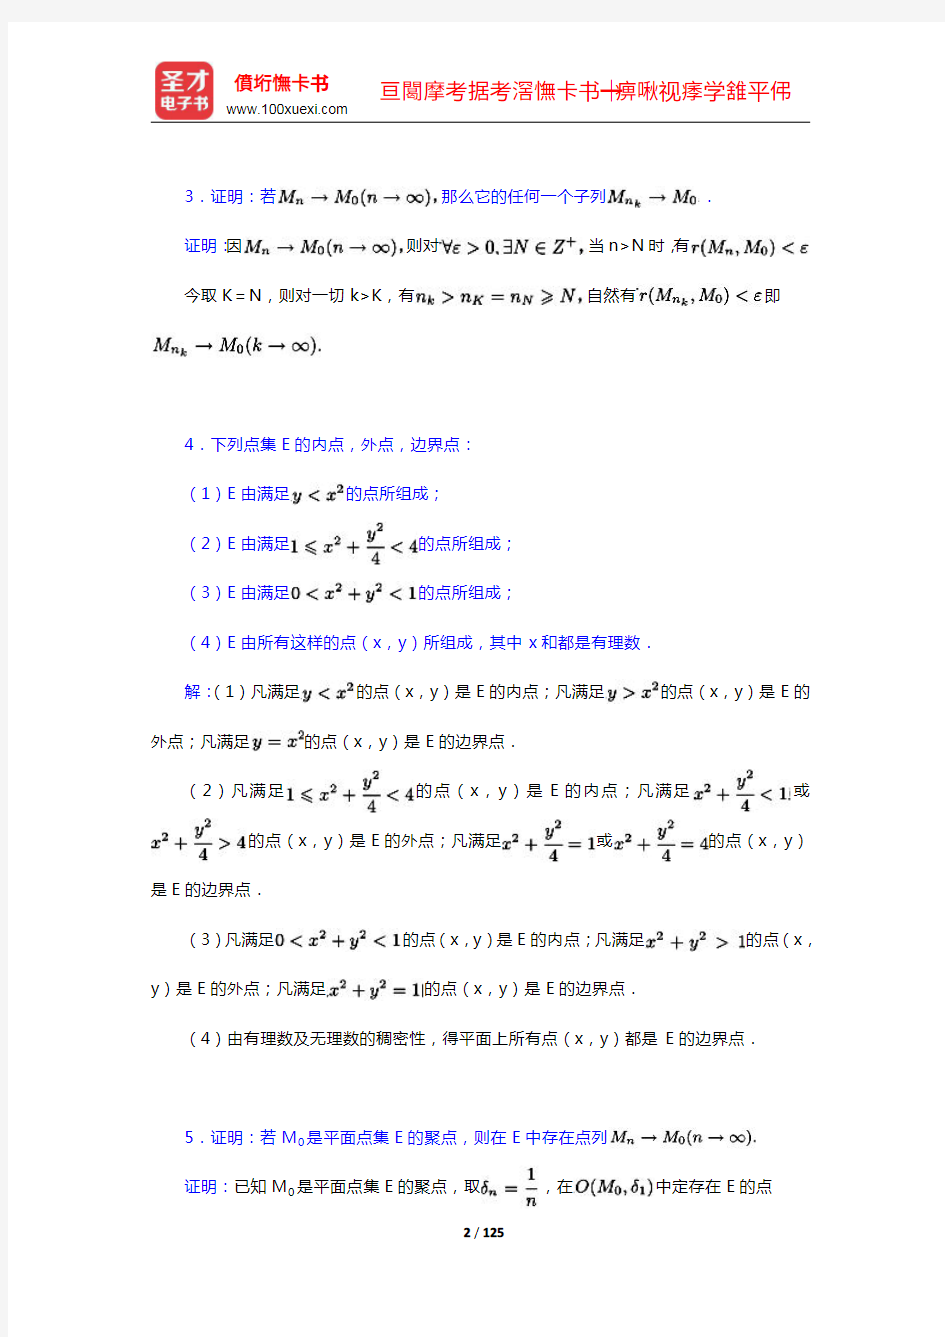 复旦大学数学系《数学分析》(第3版)(下册)配套题库(13-22章)【圣才出品】